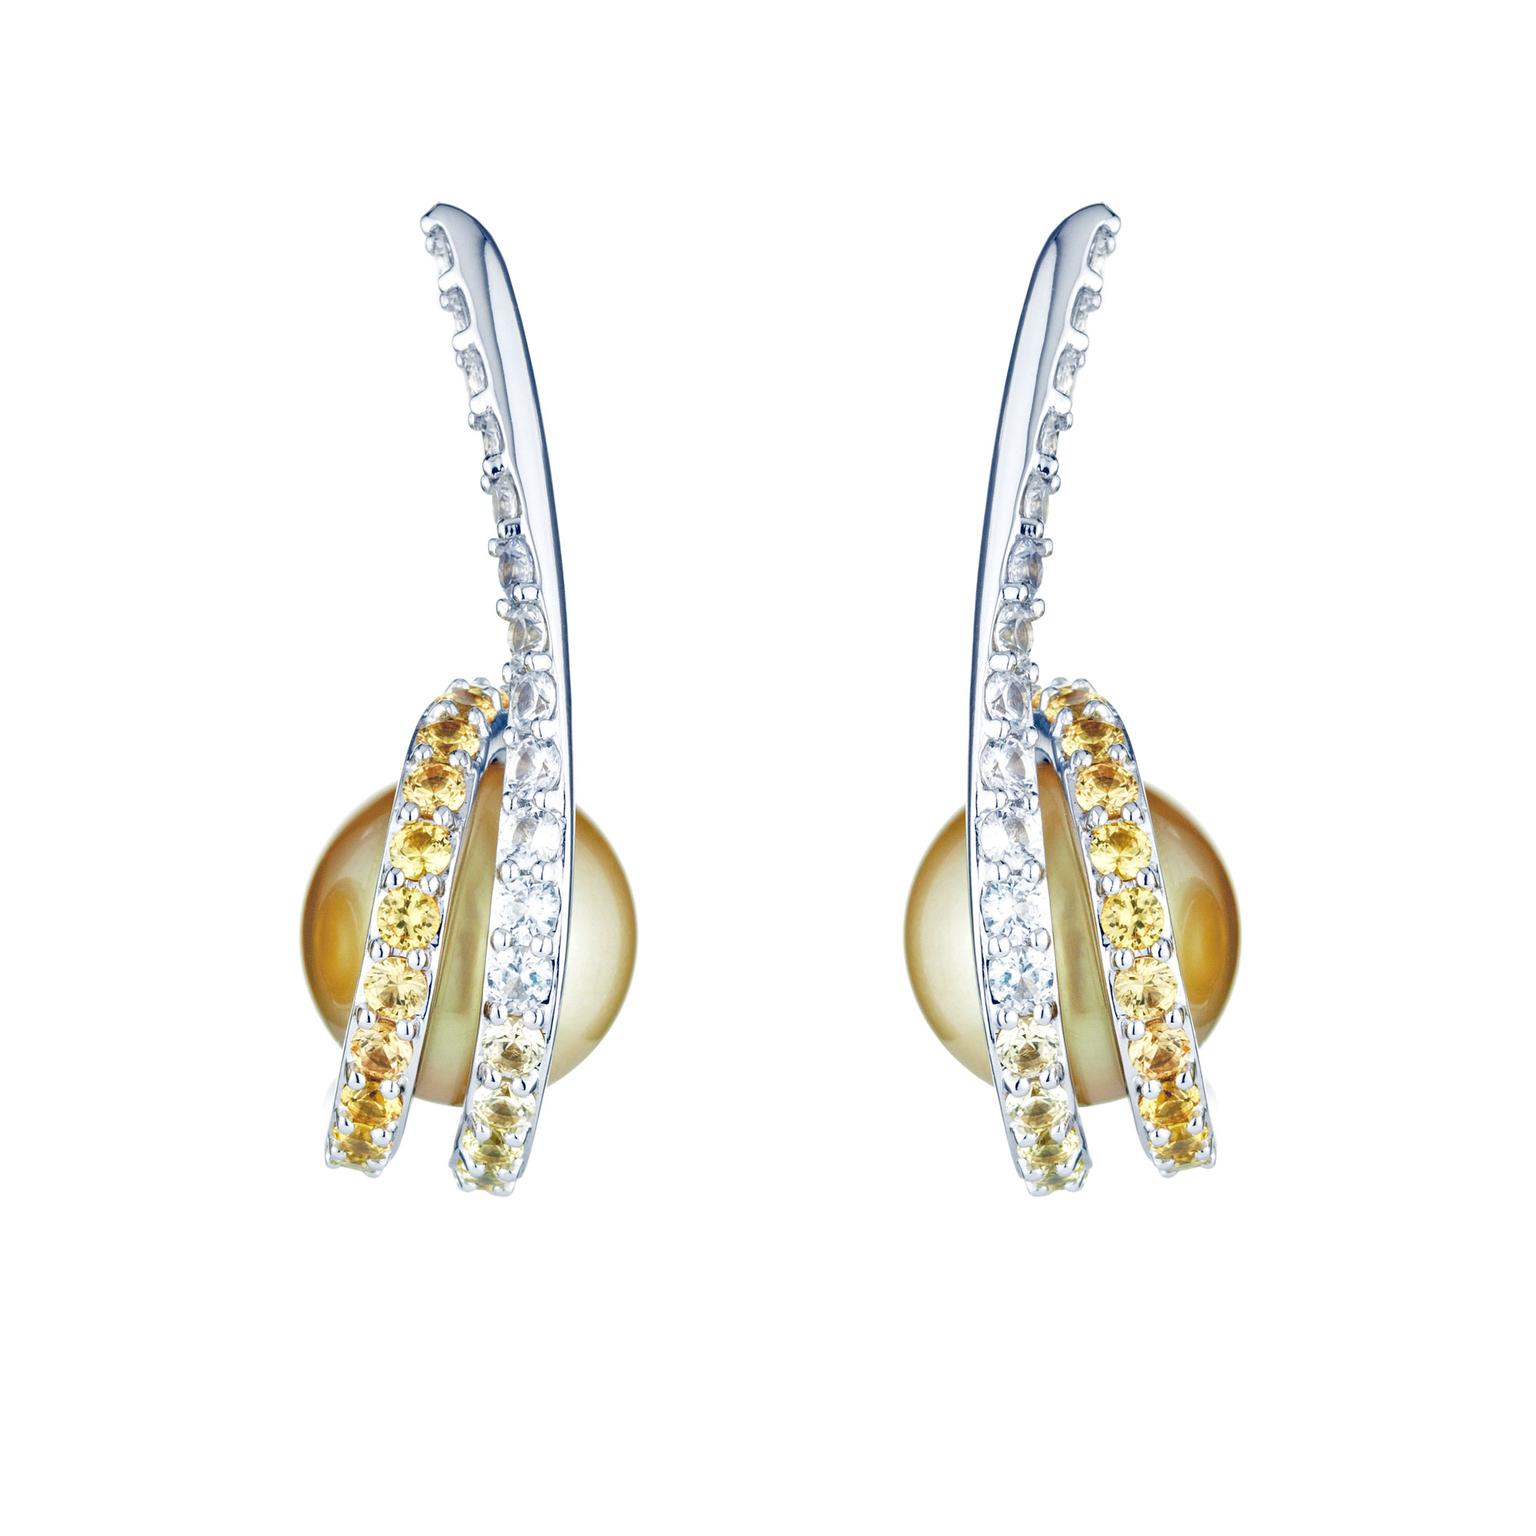 Melanie Georgacopoulos Twist pearl earrings